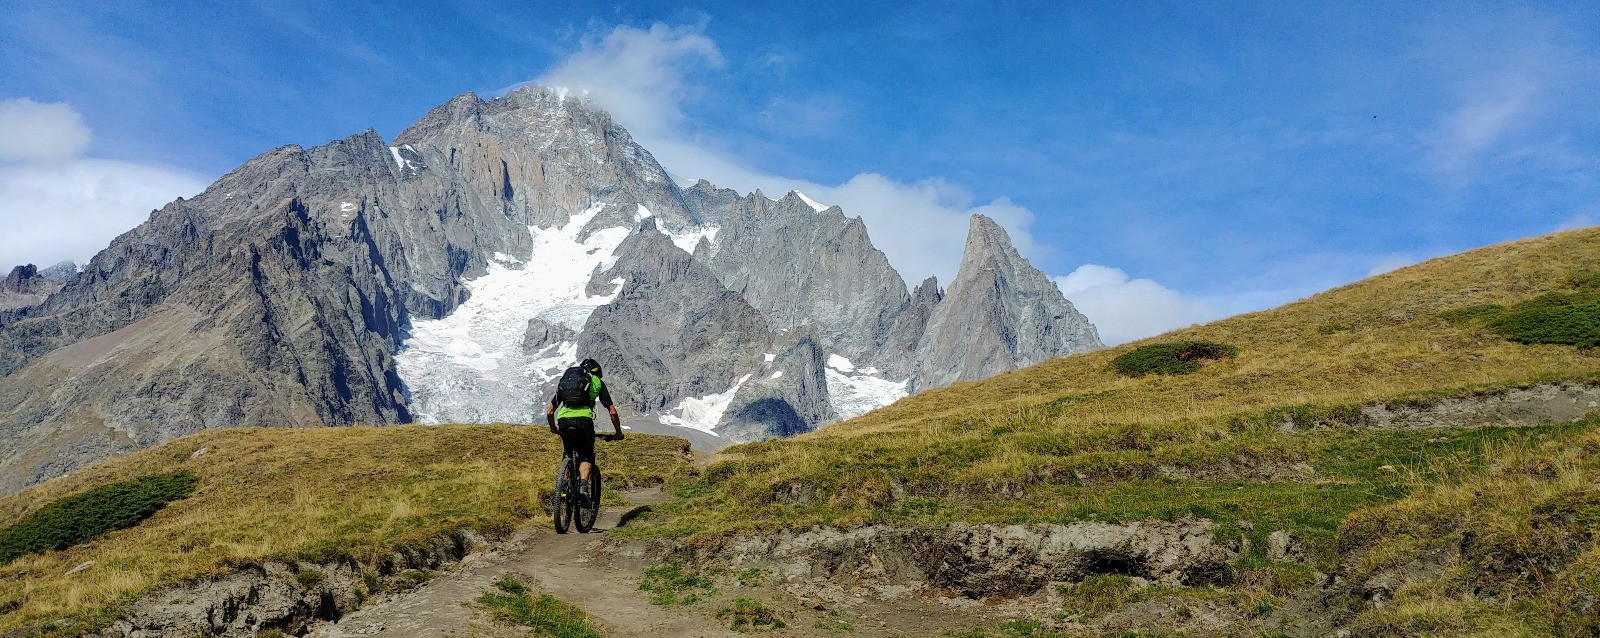 Jour 2 : humilité face au Mt Blanc de Courmayeur